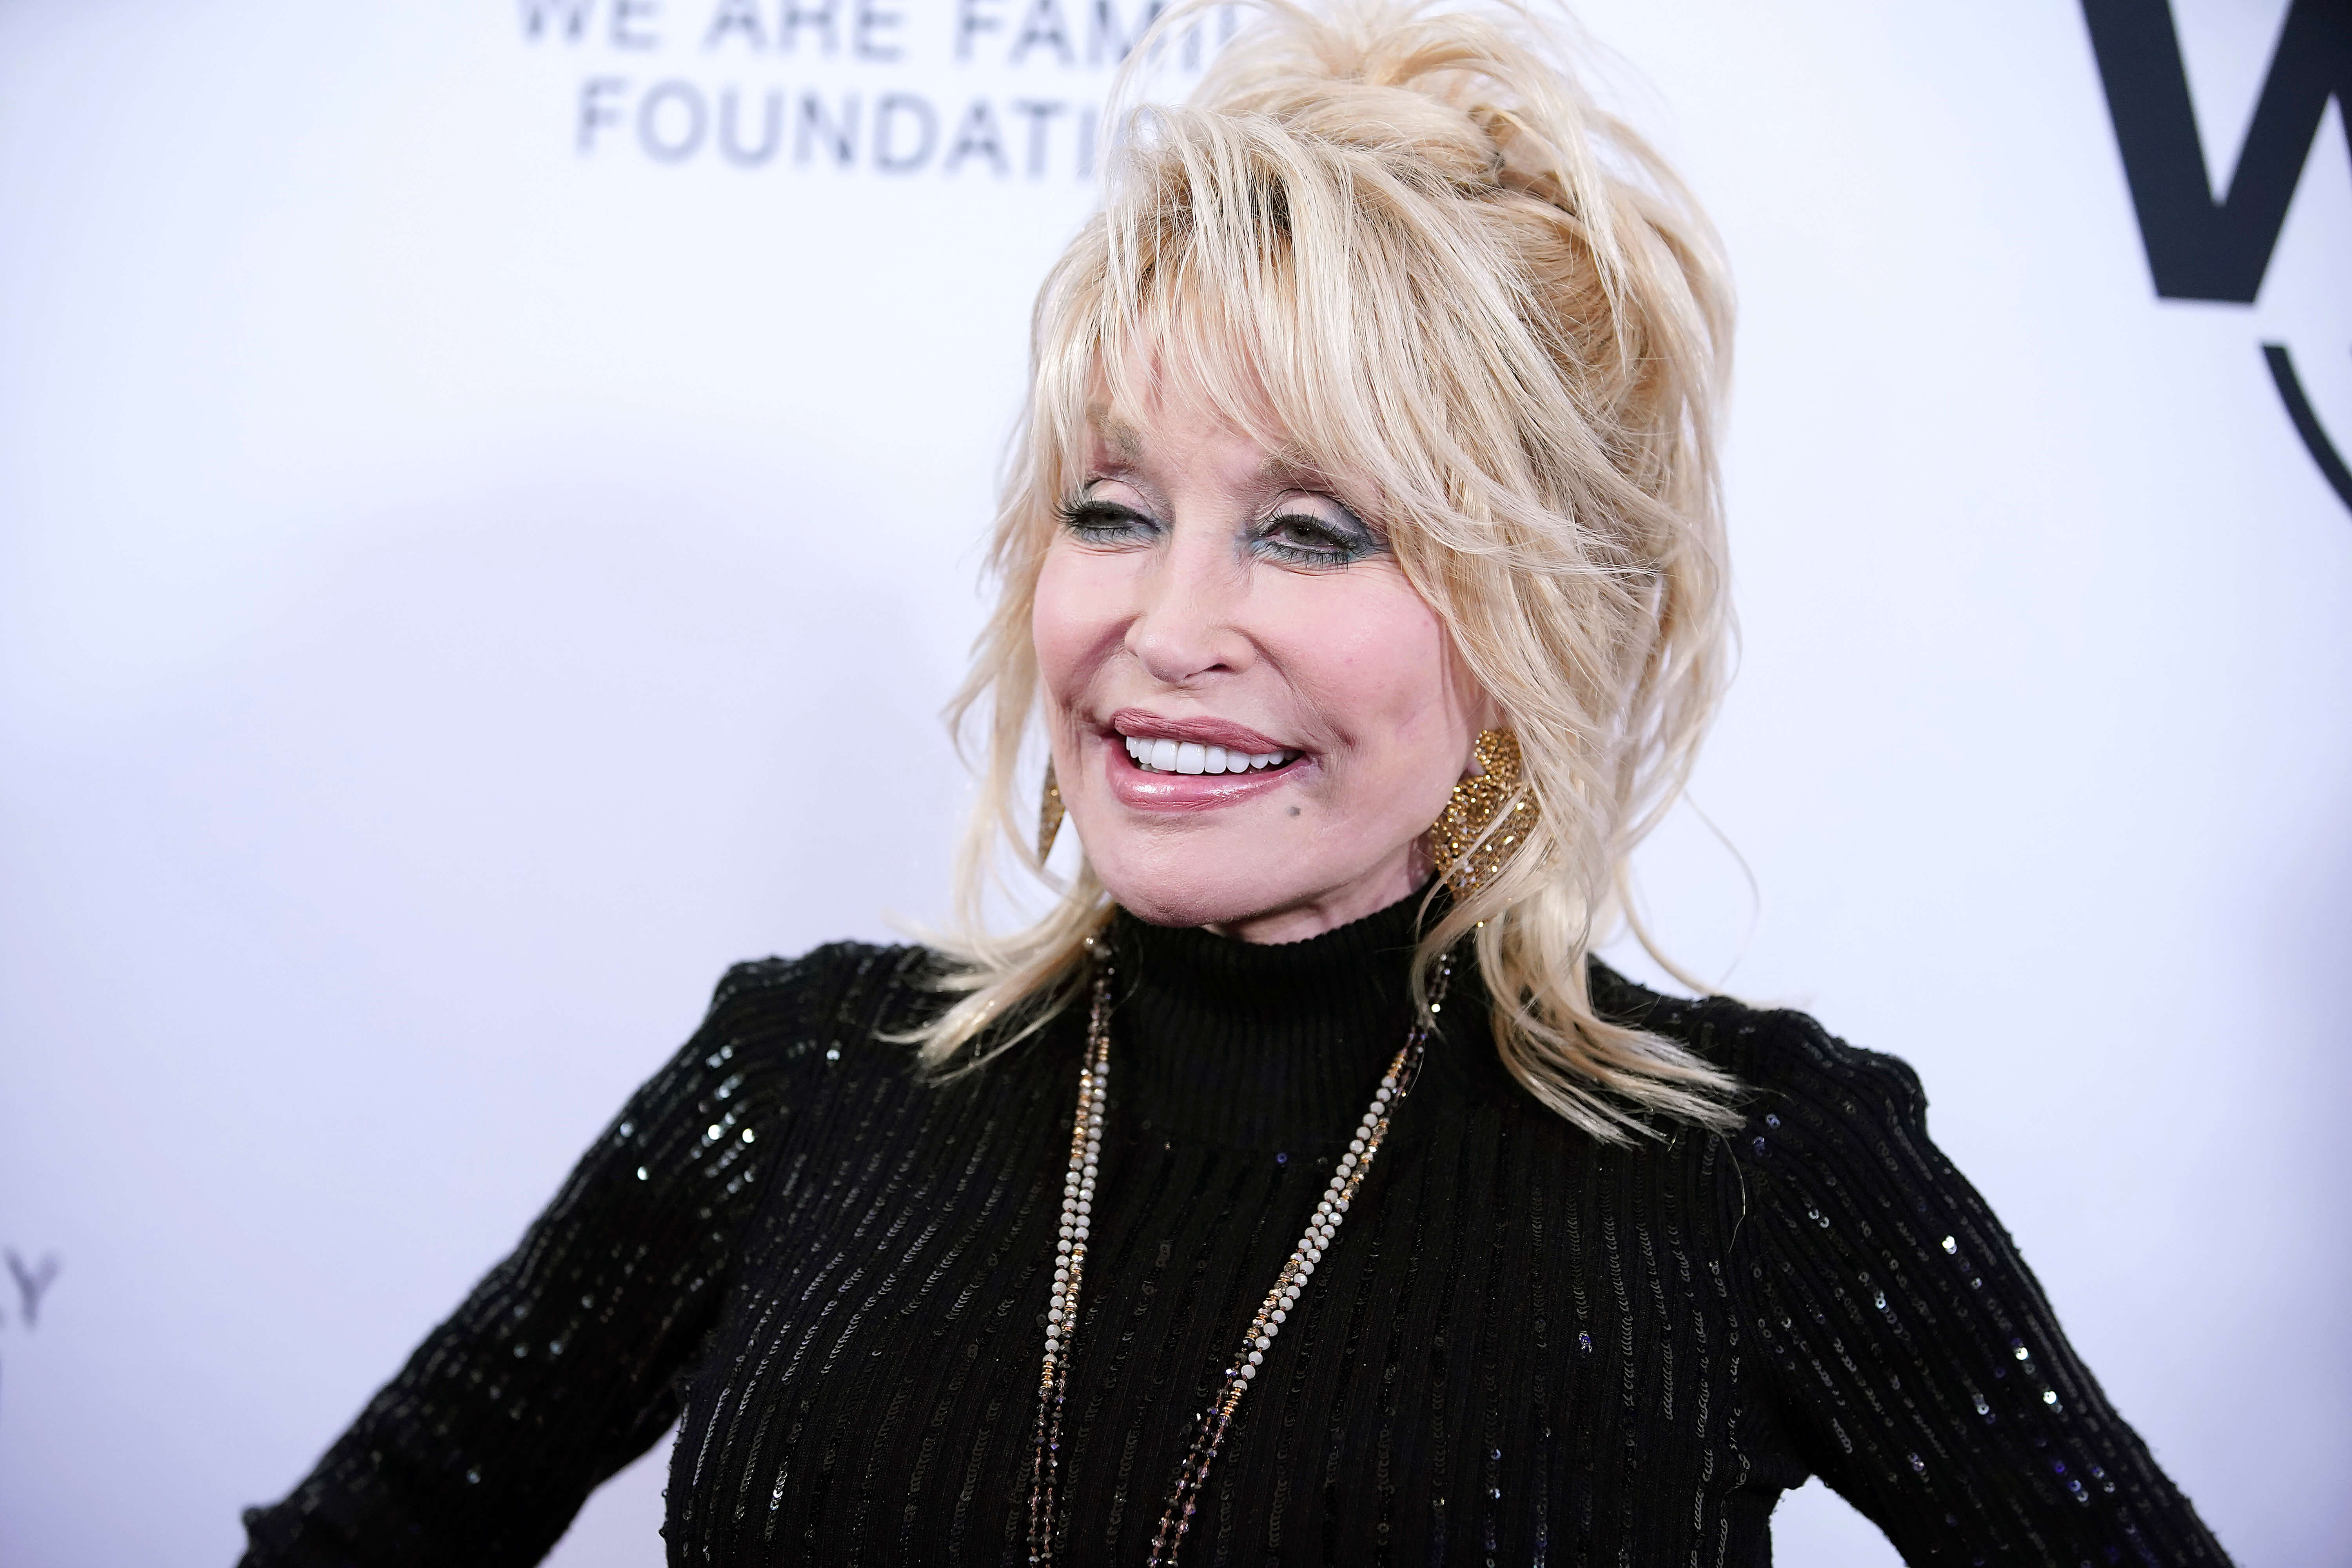 La humilde respuesta de Dolly Parton a romper 3 récords mundiales Guinness más, lo que lleva su total a 10